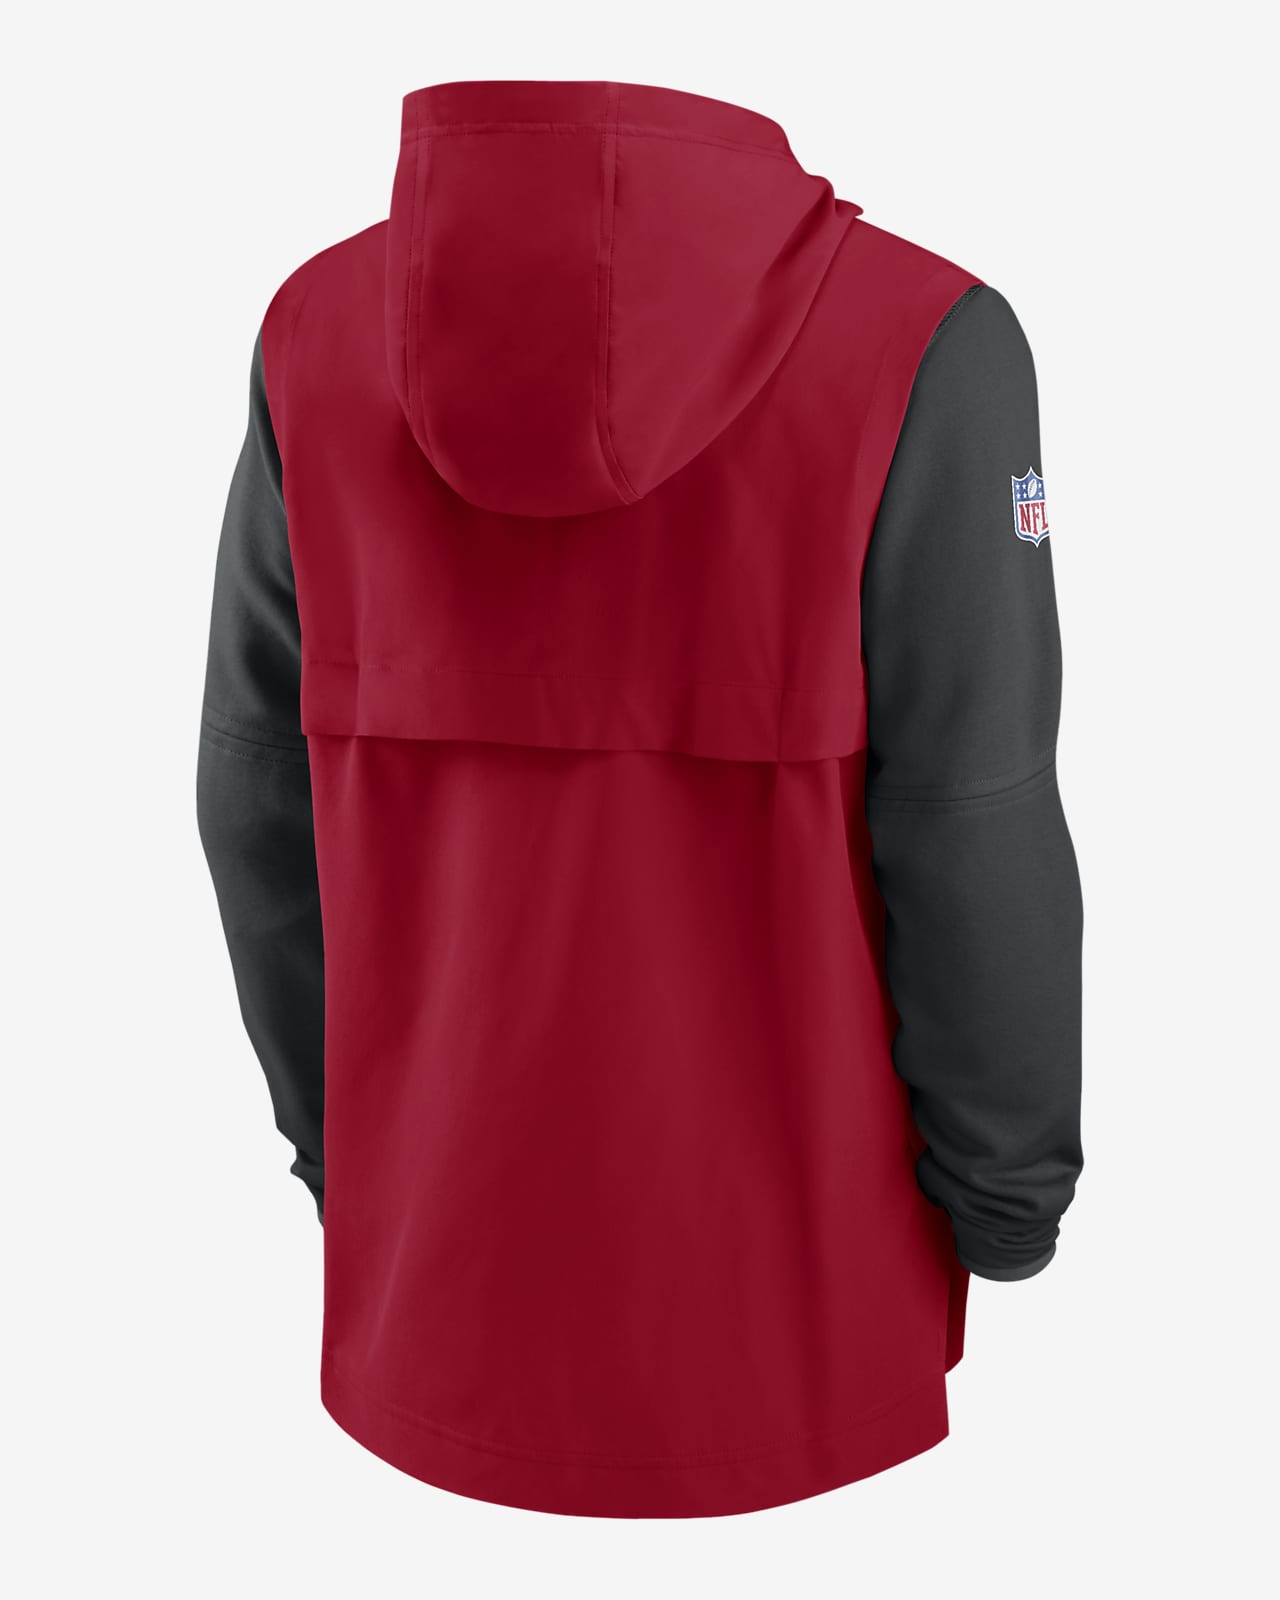 nike san francisco 49ers hoodie